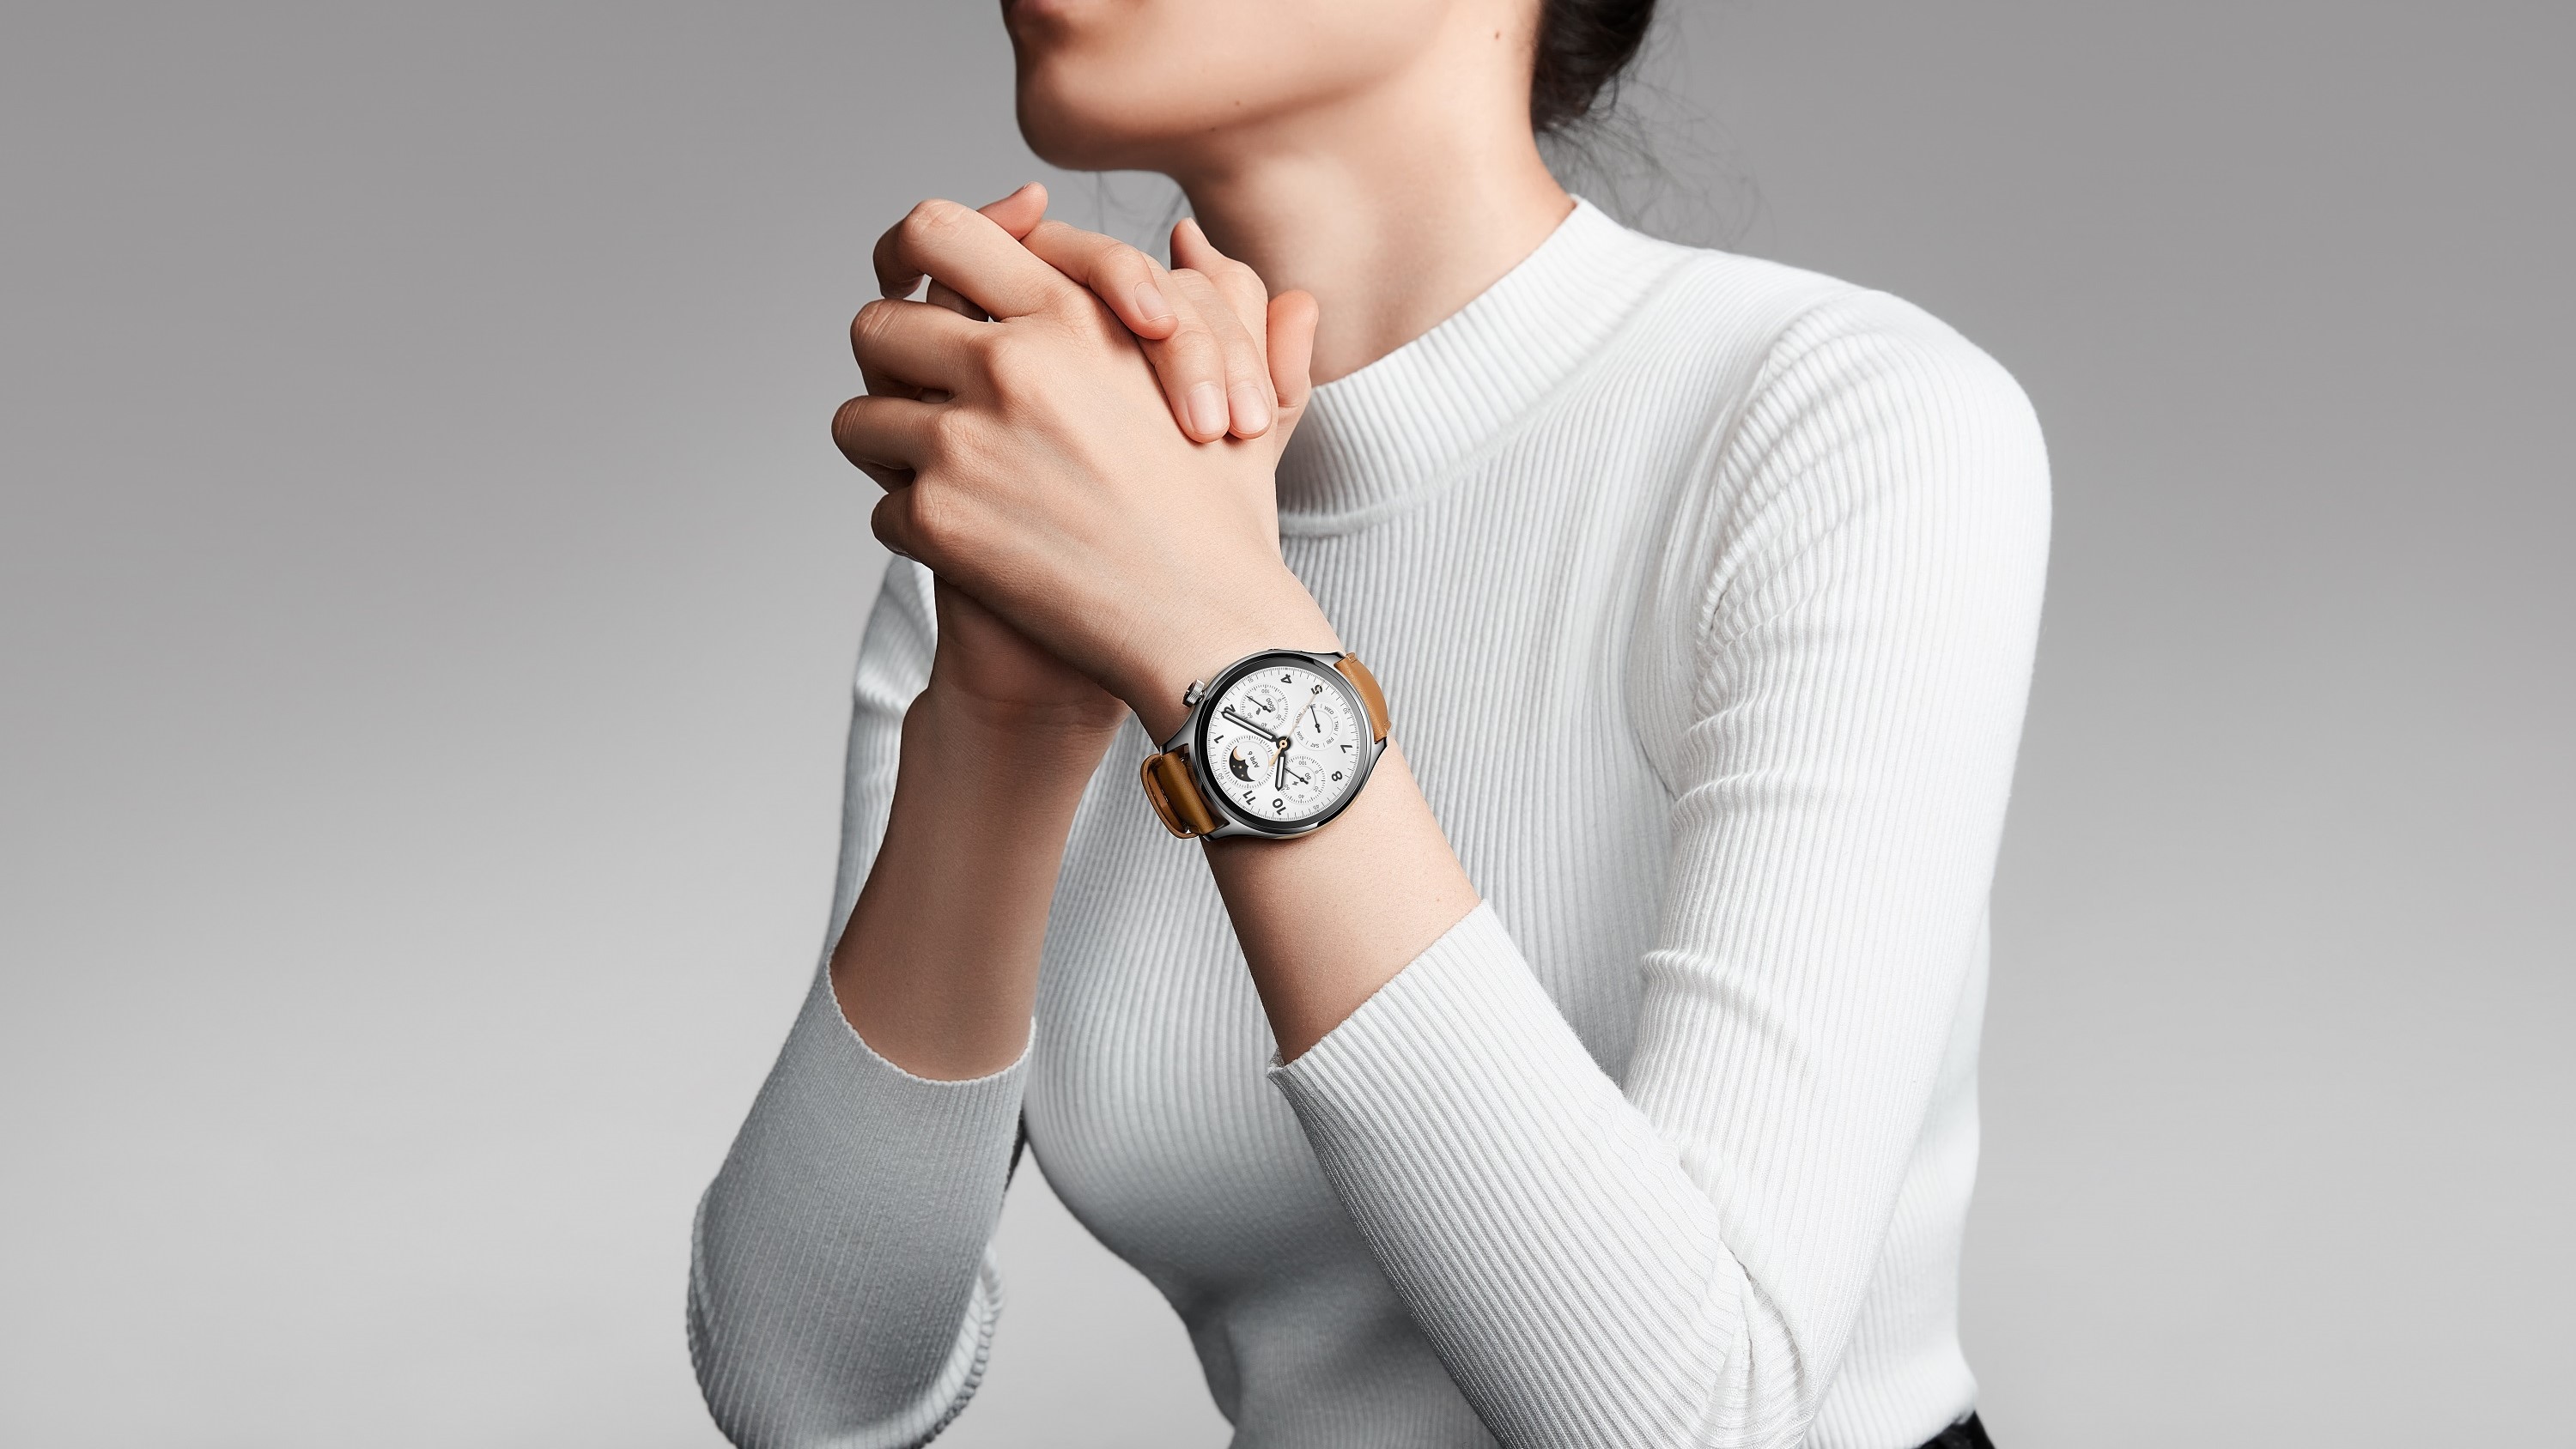 Xiaomin tyylikäs Watch S1 Pro -älykello saapui Suomeen - hinta 329 euroa -  Puhelinvertailu